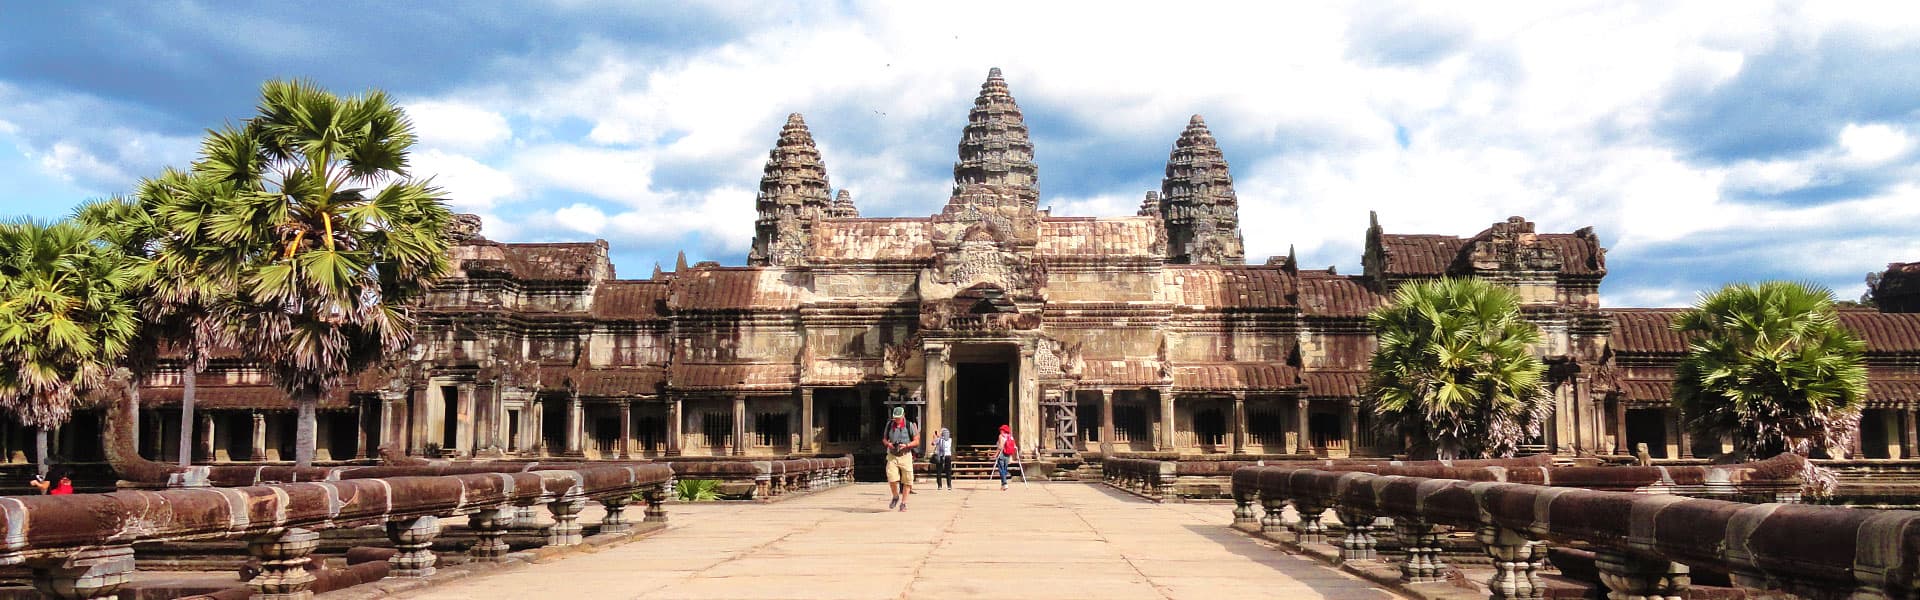 Angkor Wat of Cambodia